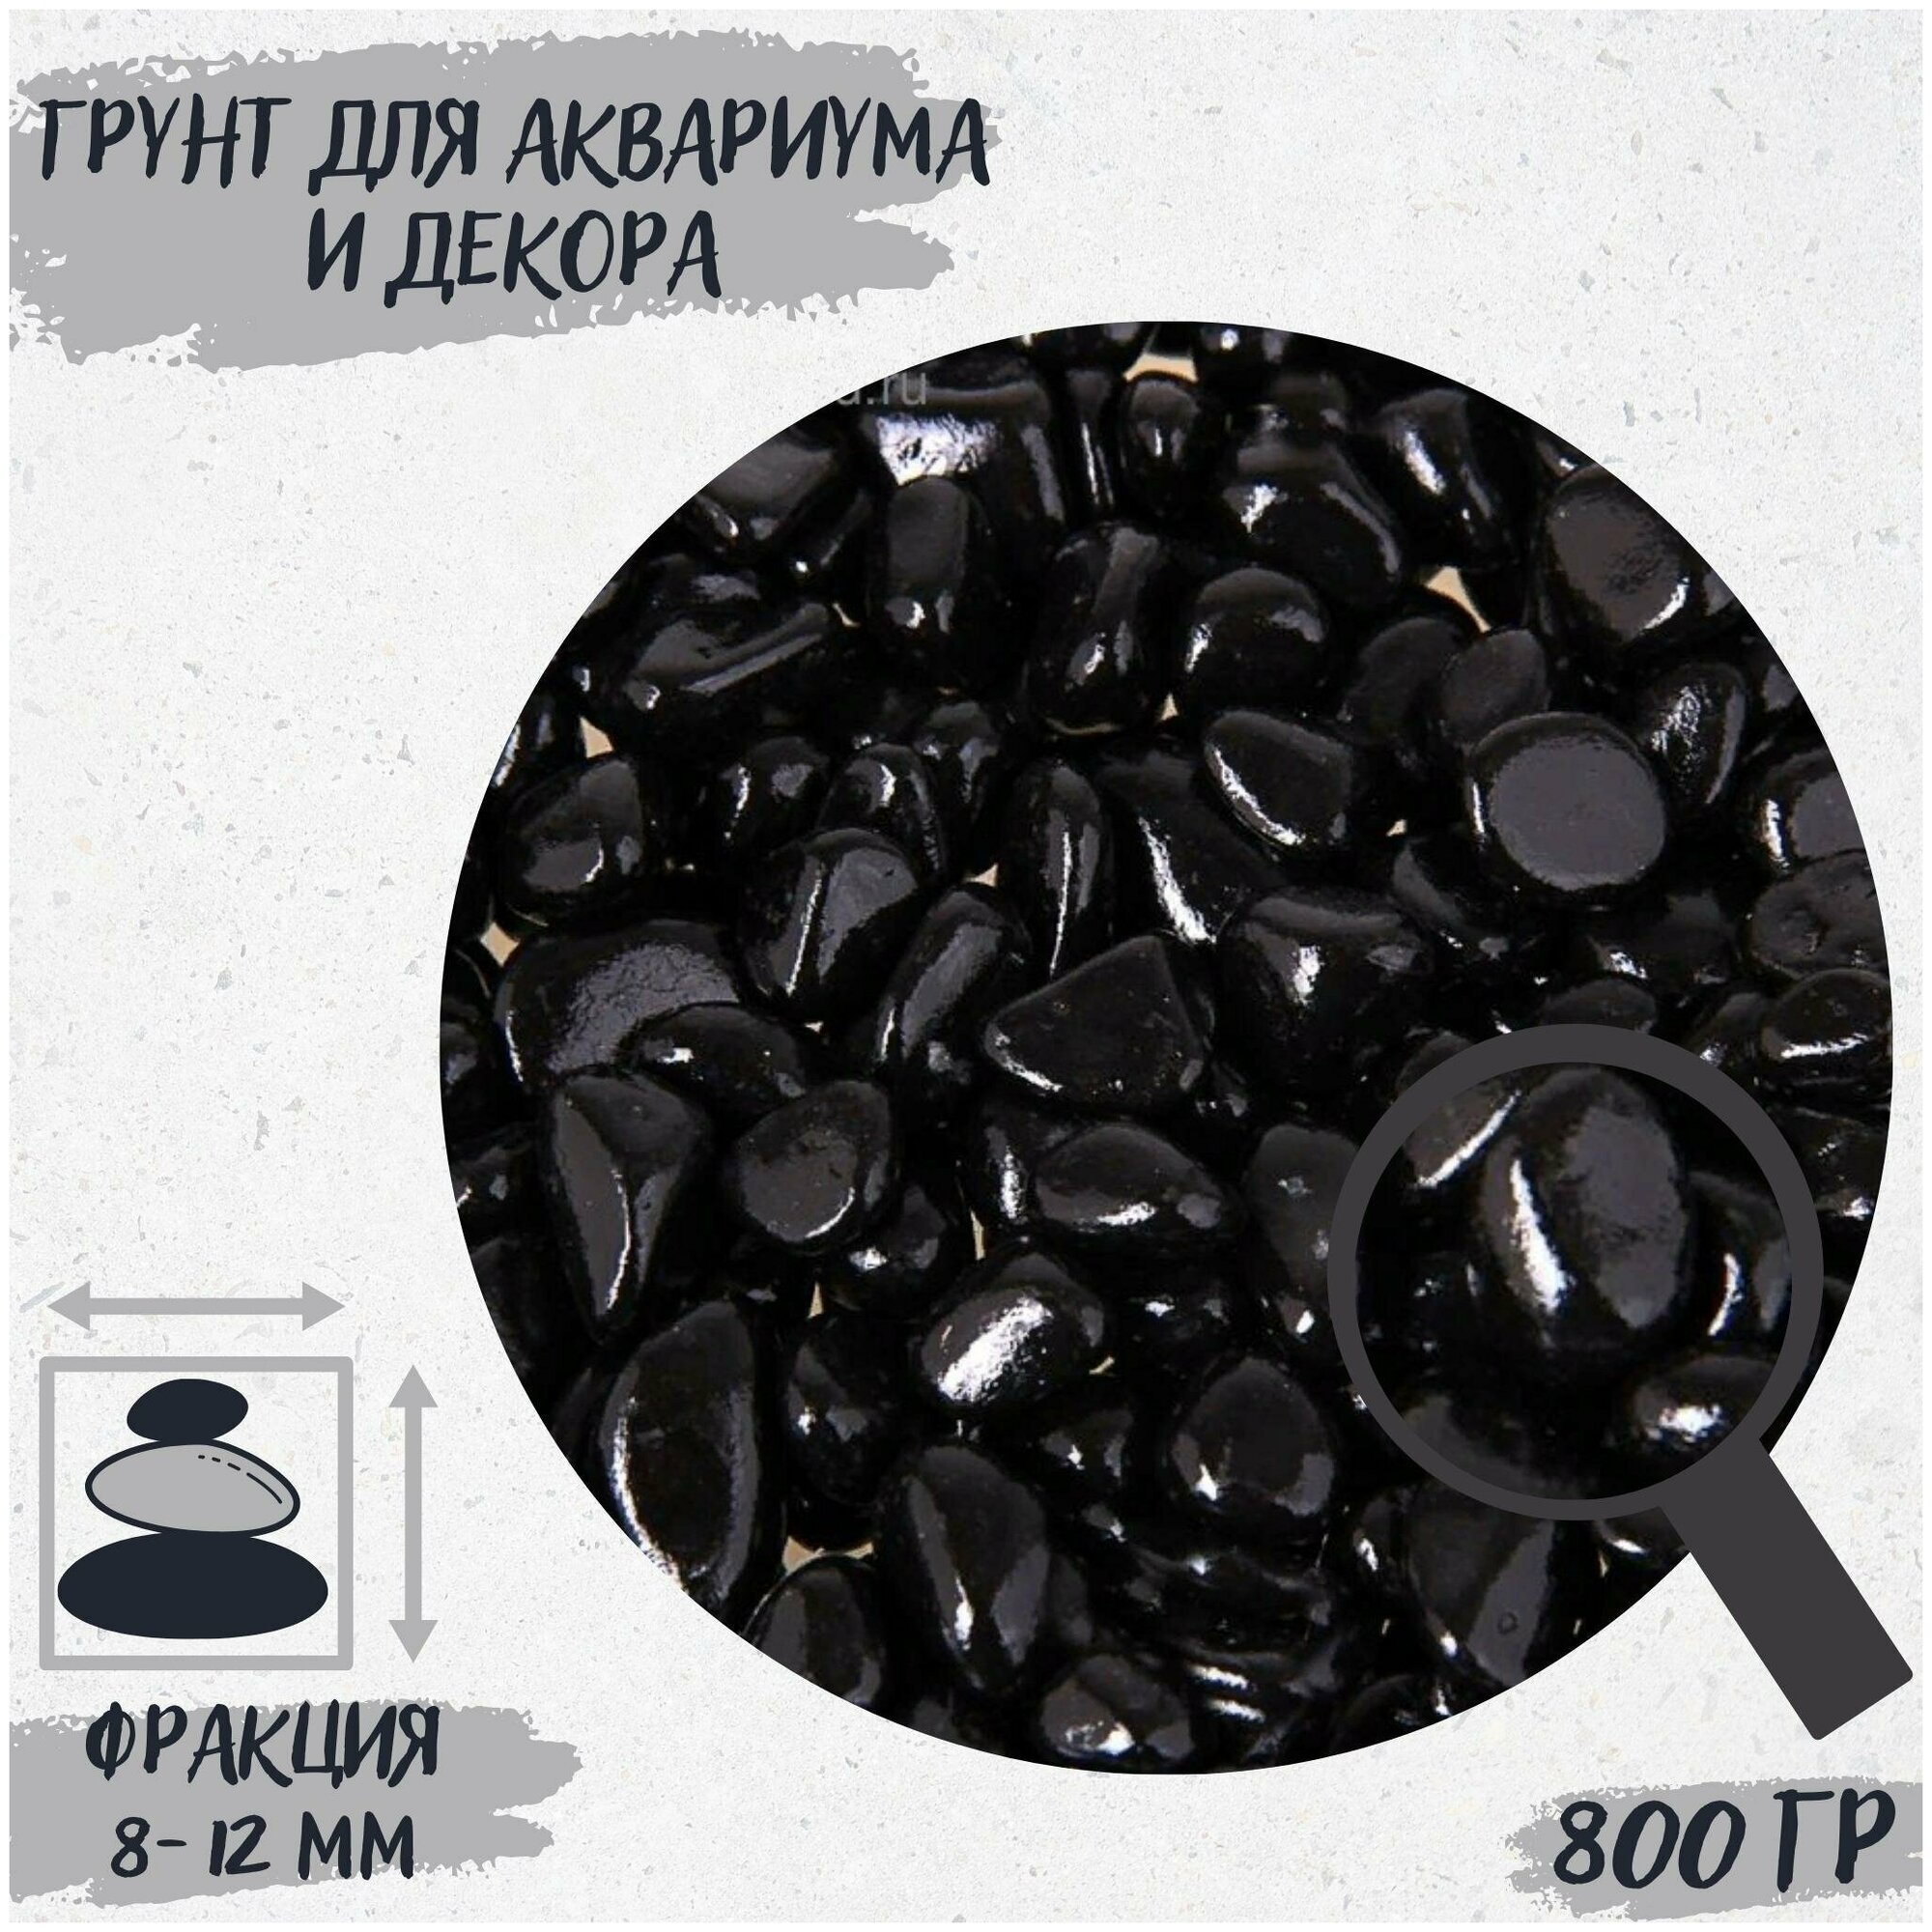 Грунт для аквариума и декора "Галька цветная черная" 800г фракция 8-12 мм